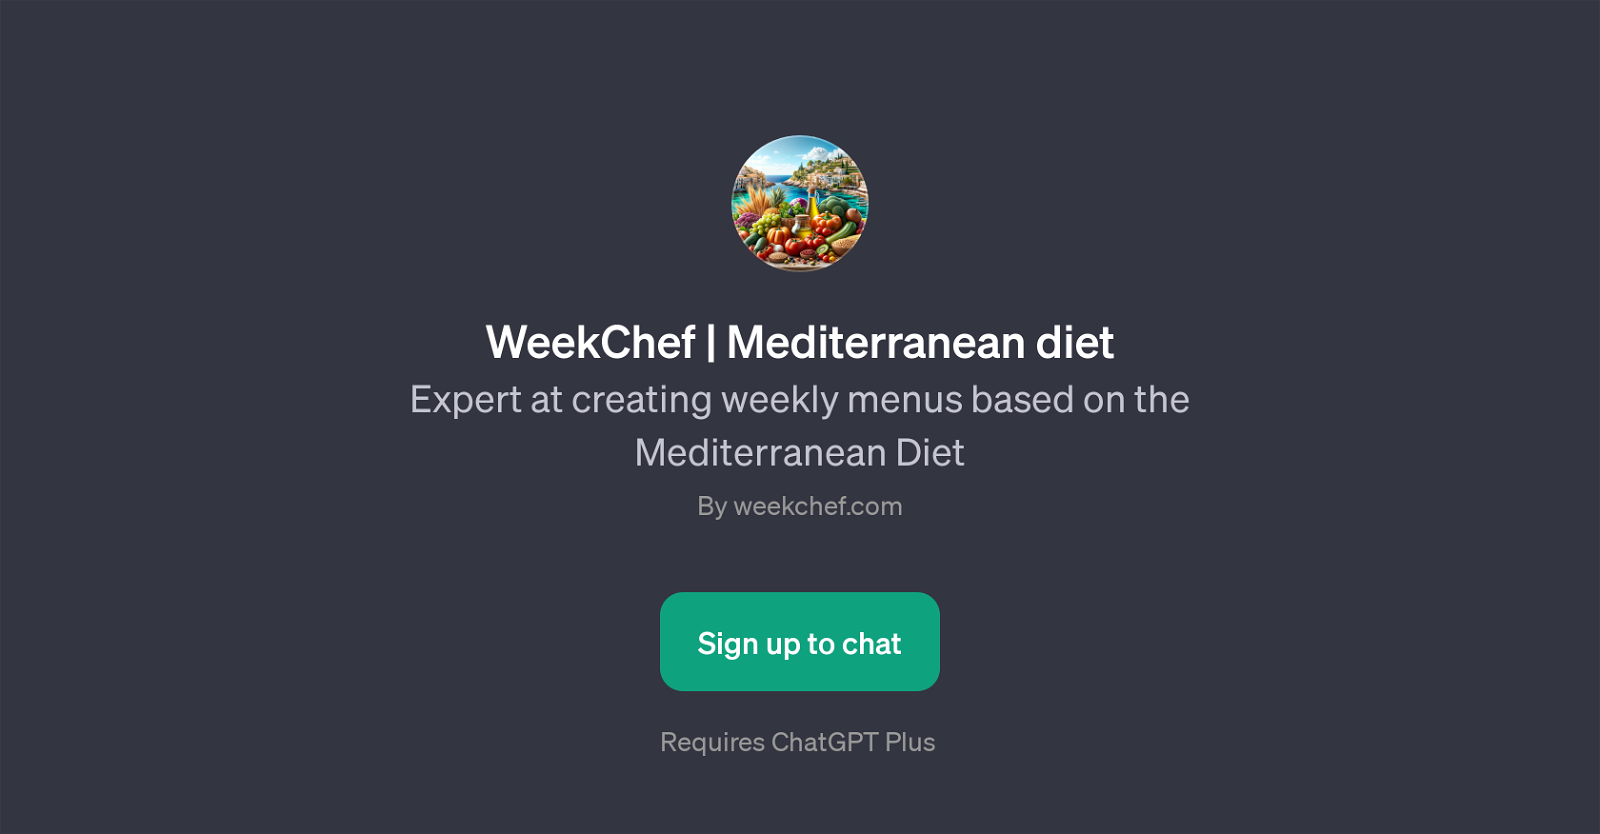 WeekChef | Mediterranean diet website